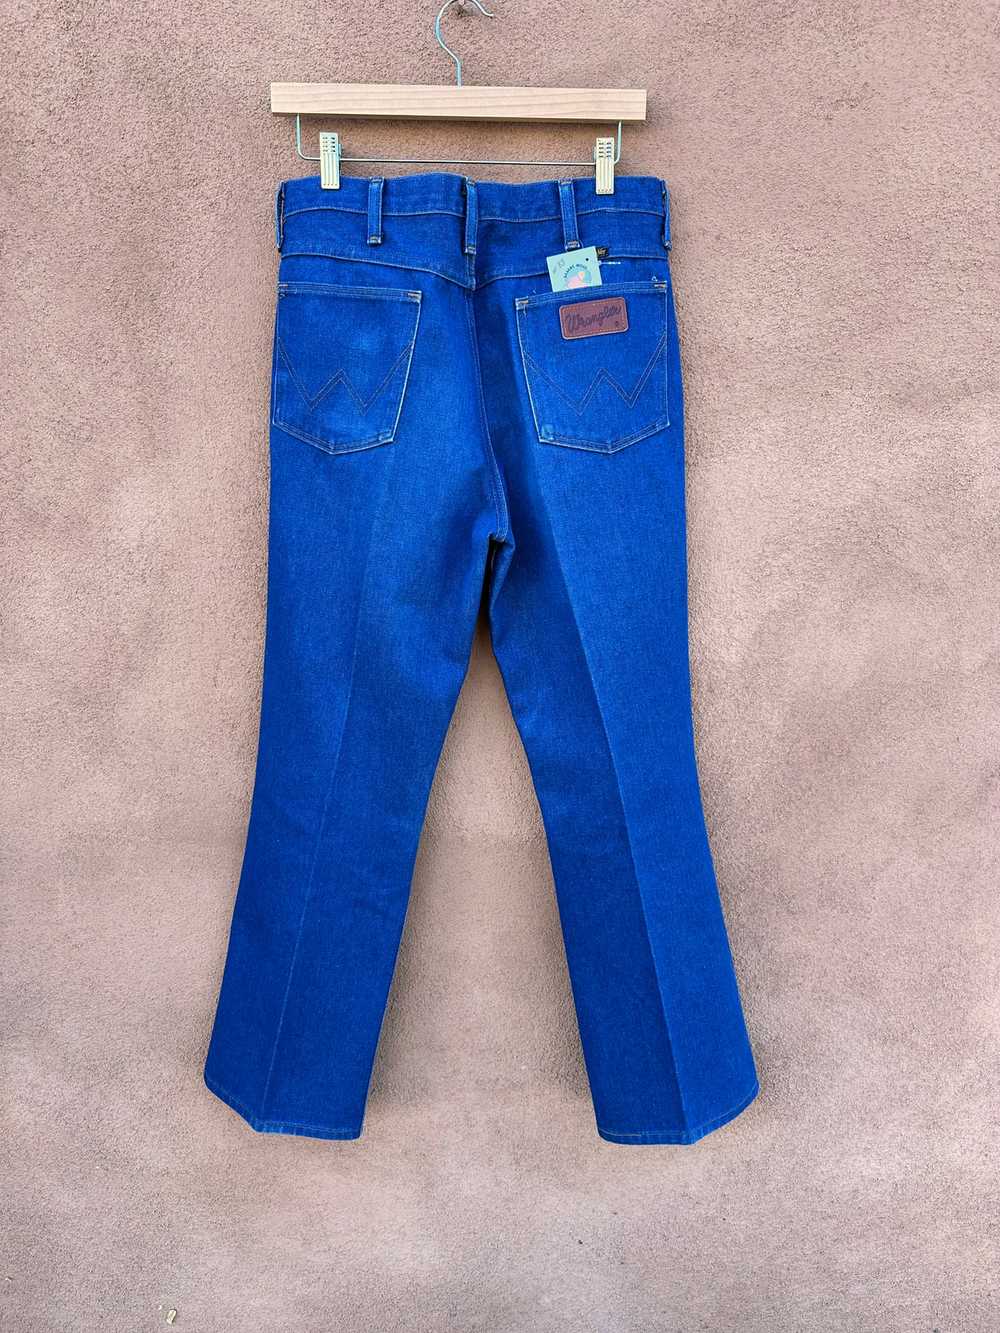 1970's Wrangler Straight Leg Jeans - 33 - Made in… - image 3